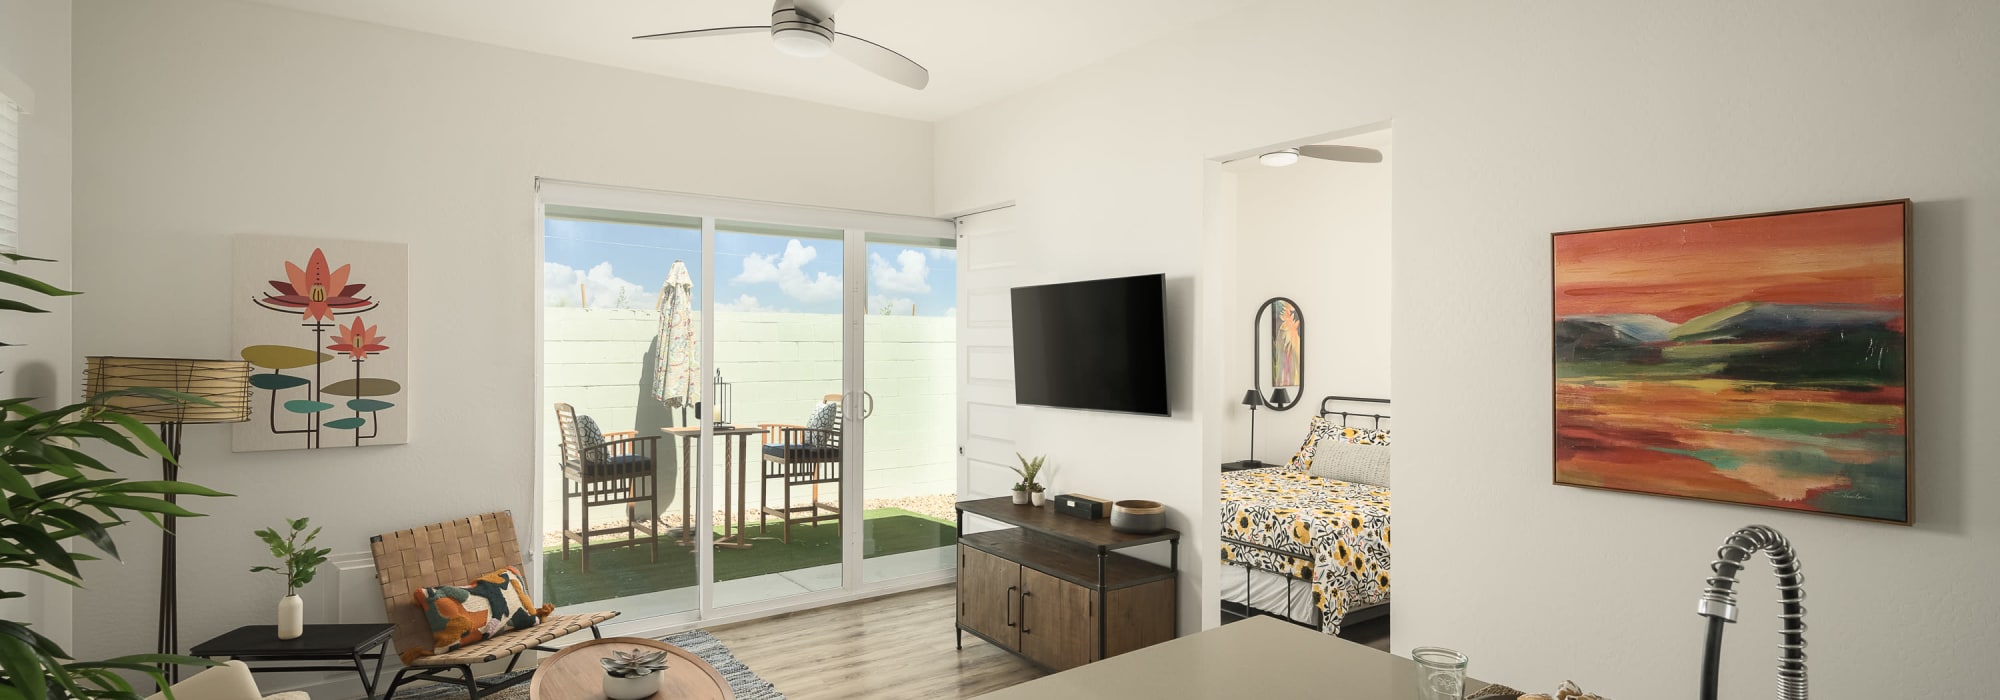 Open one-bedroom floor plan at Peralta Vista in Mesa, Arizona